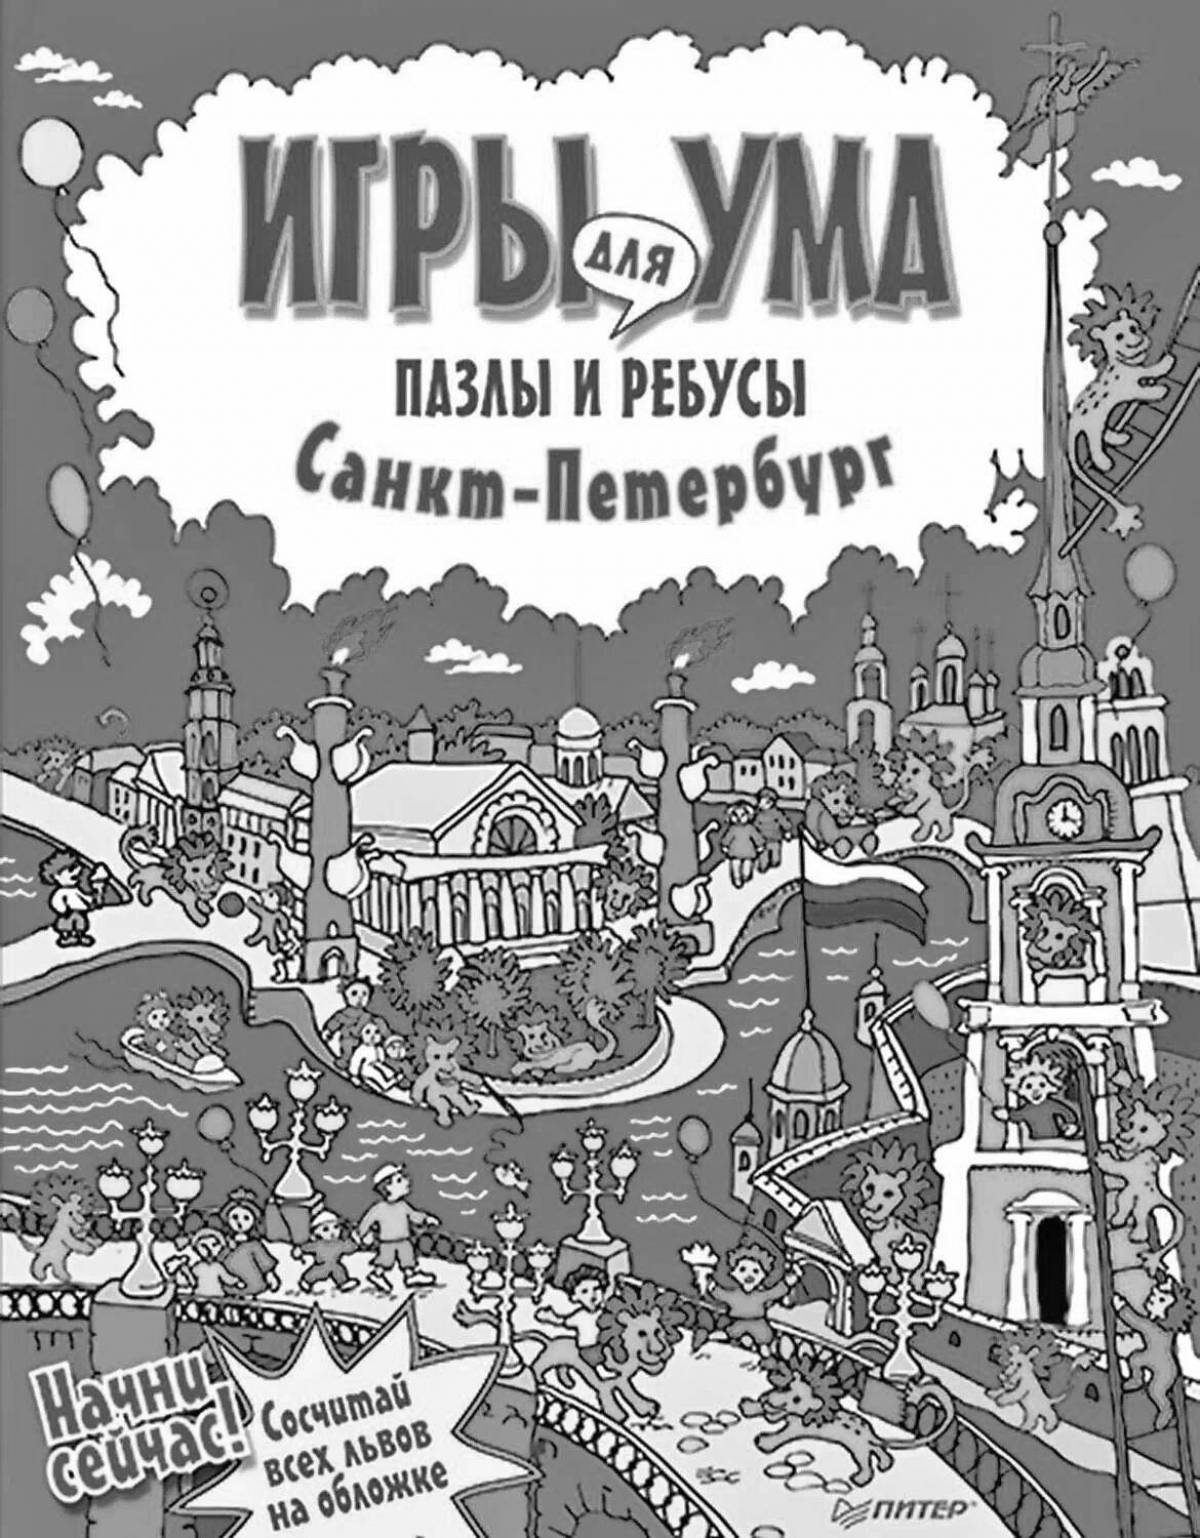 Violent Petersburg book